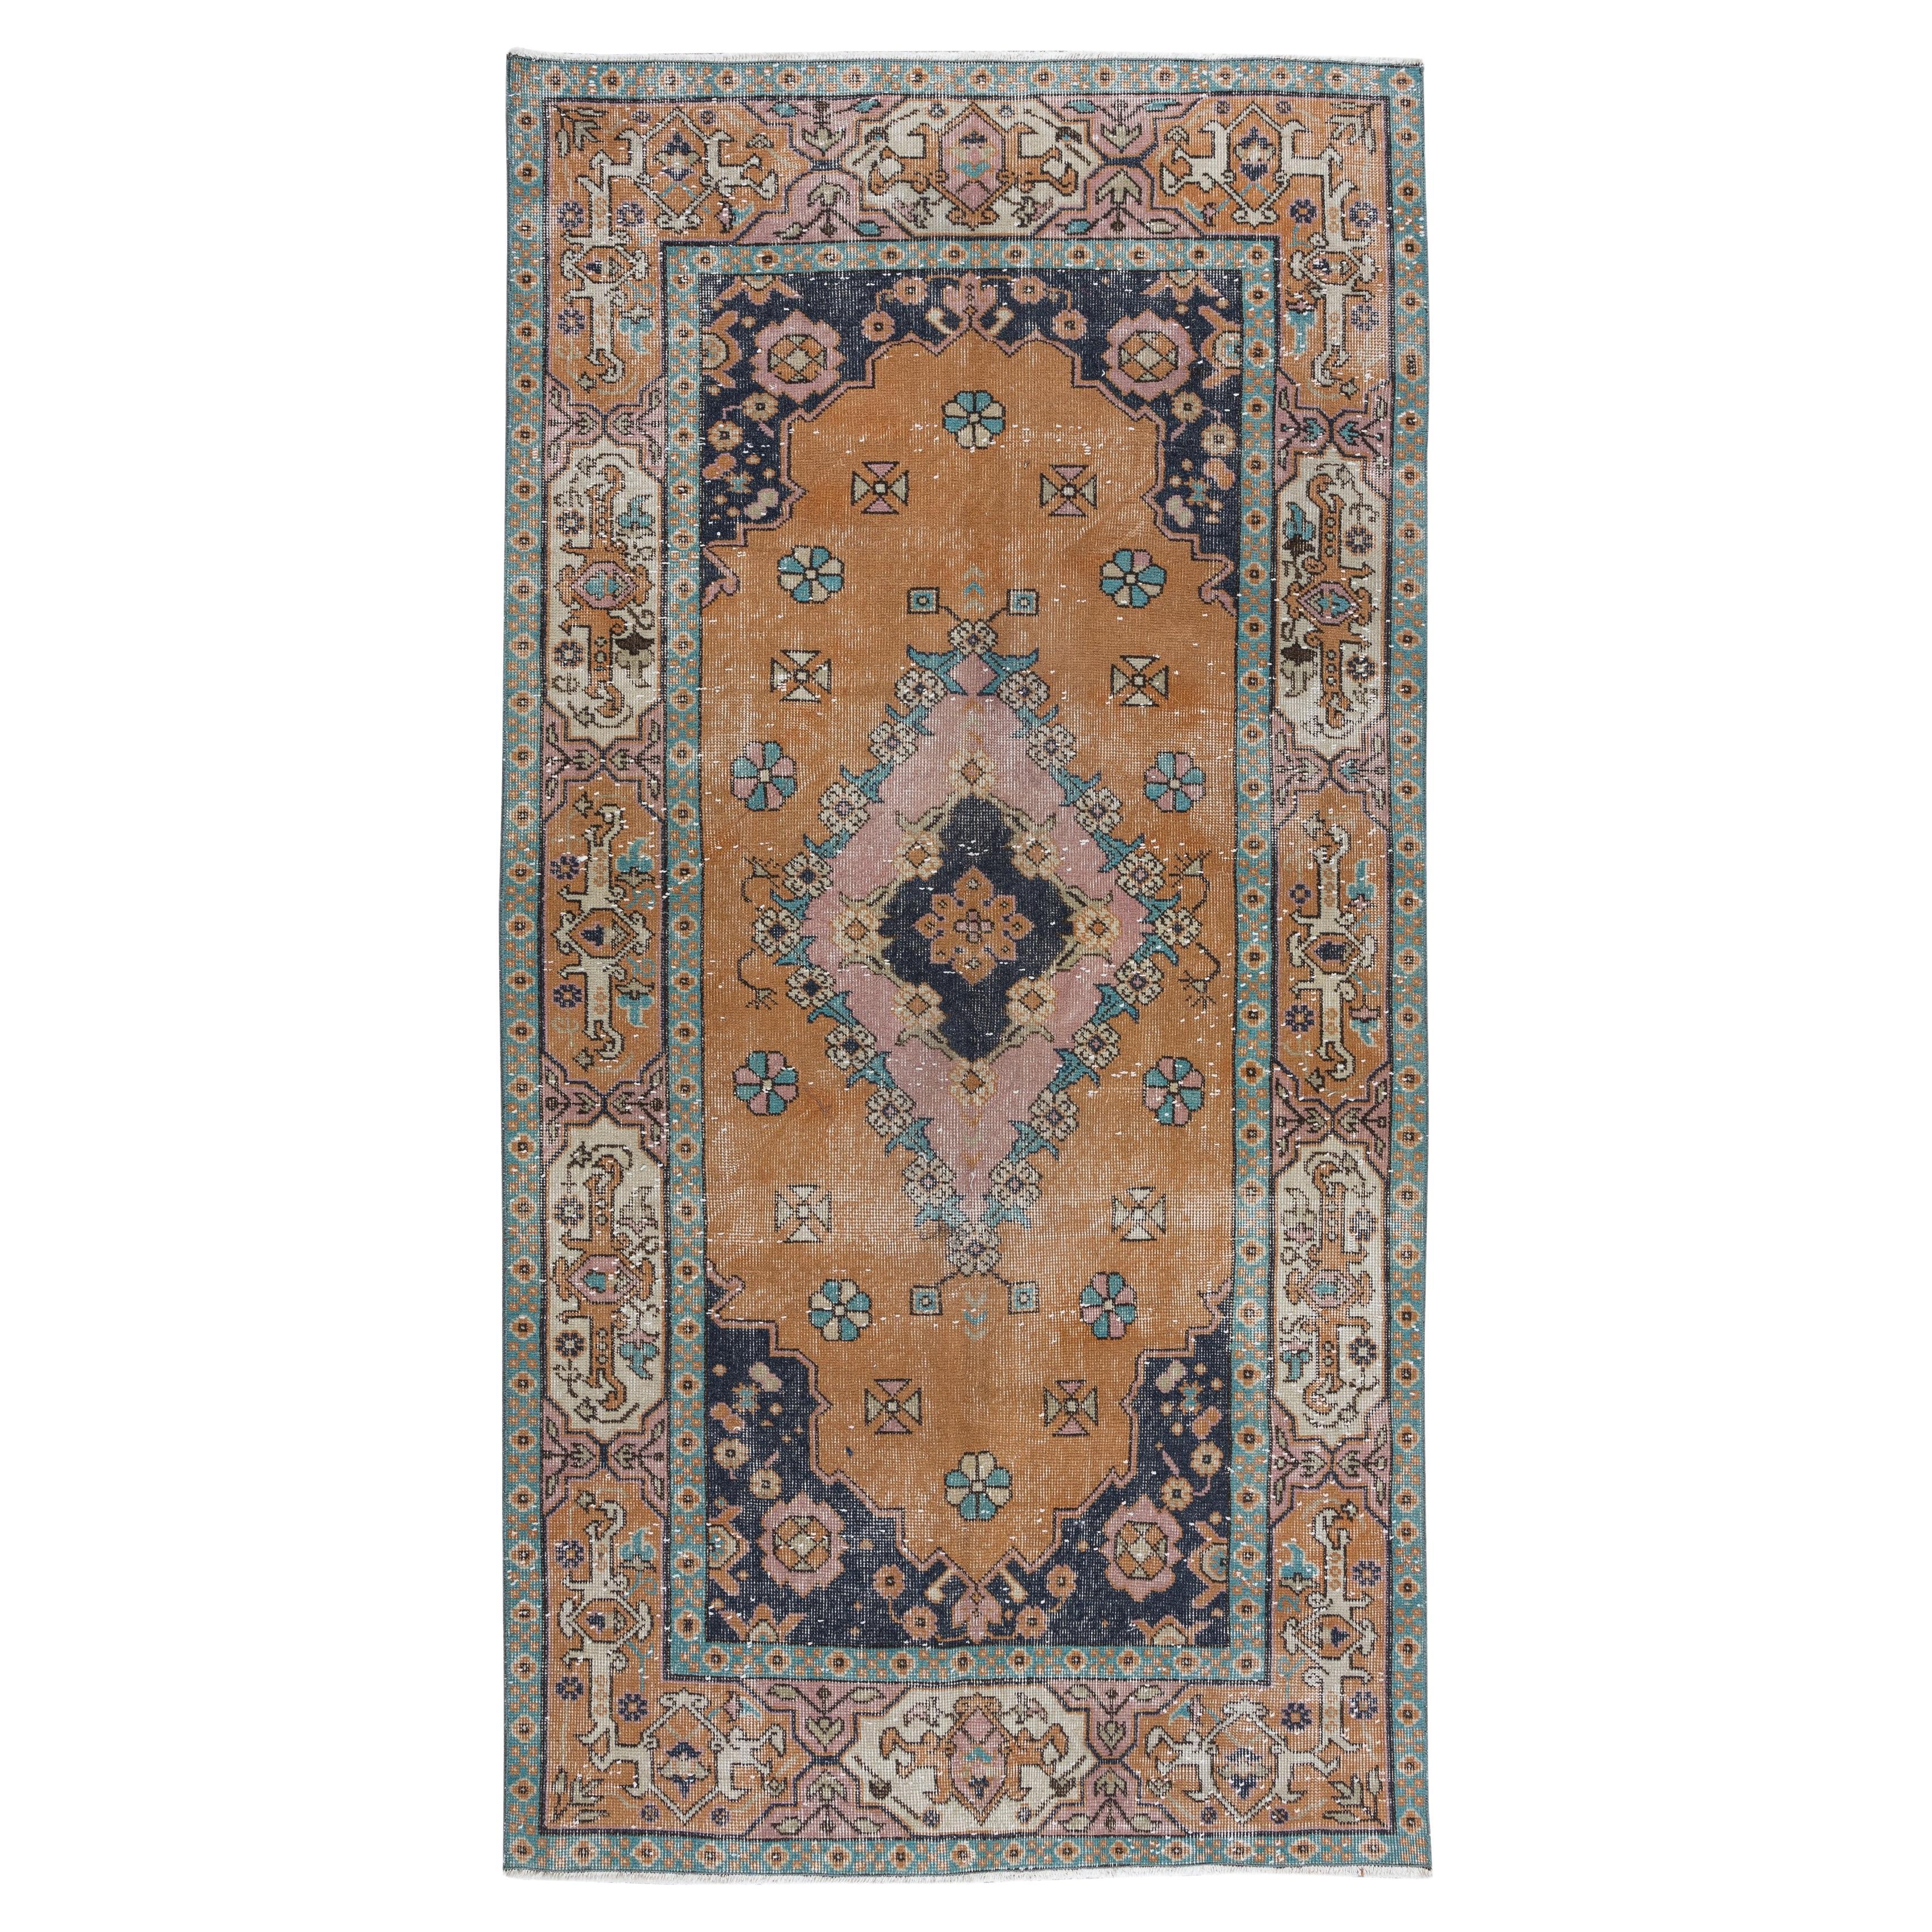 4.2x7.9 Ft Vintage Handgeknüpfter Teppich, Unikat Zentral anatolischer Teppich